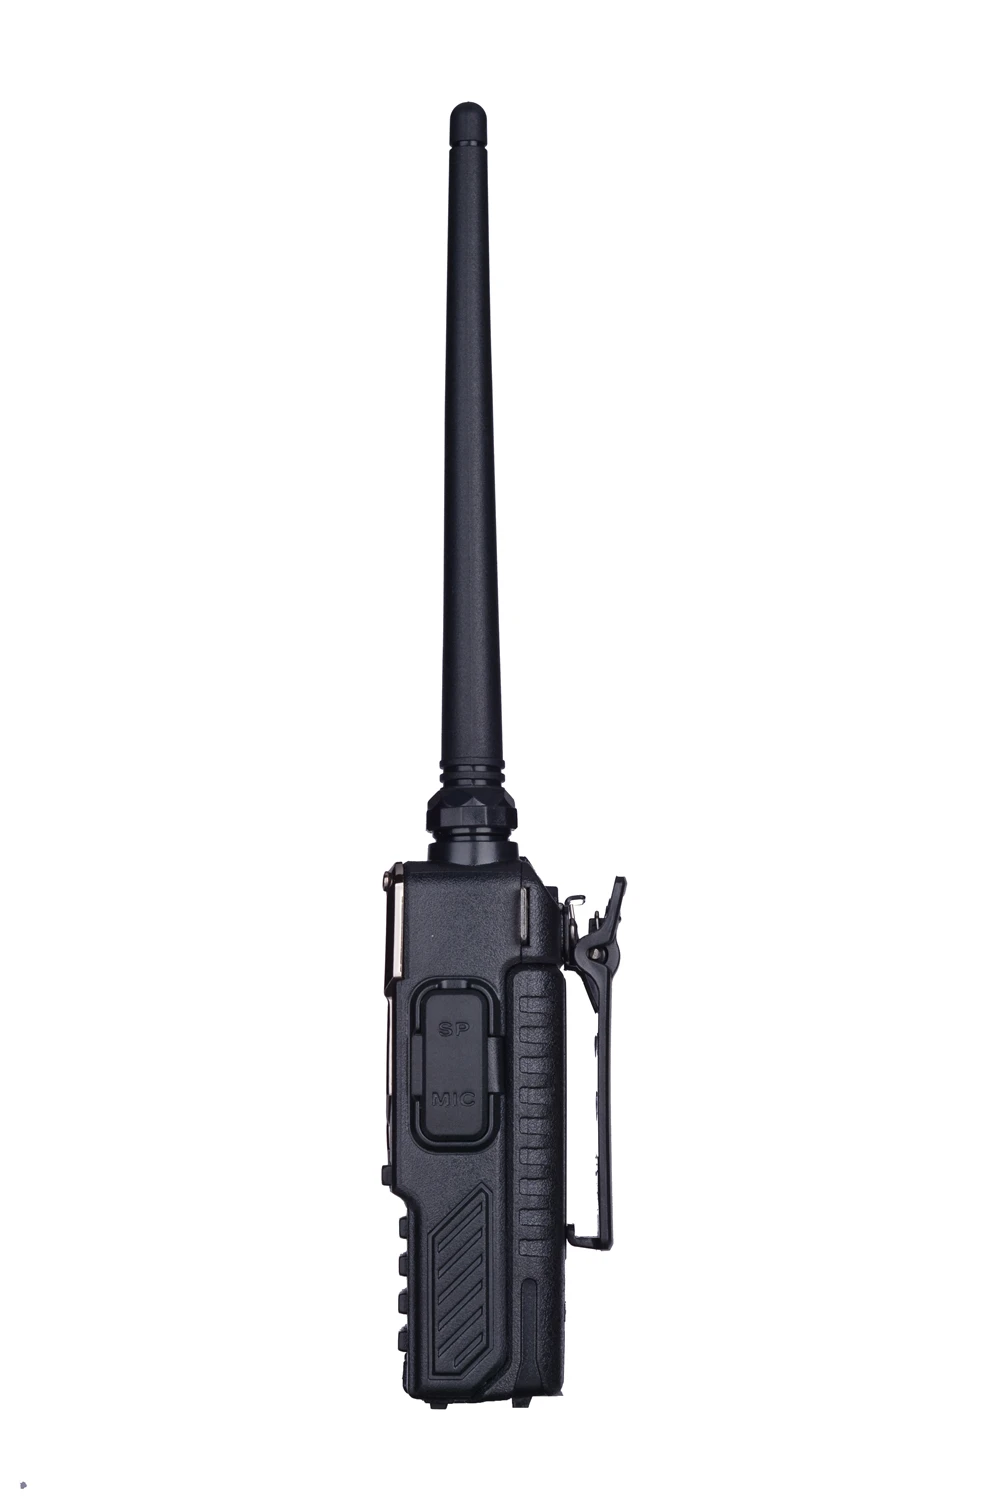 BaoFeng UV-5RE рация 10 км VHF UHF136-174Mhz и 400-520 МГц двухдиапазонный двухсторонний радиоприемник UV-5R UV 5R CB радиоприемопередатчик Hf